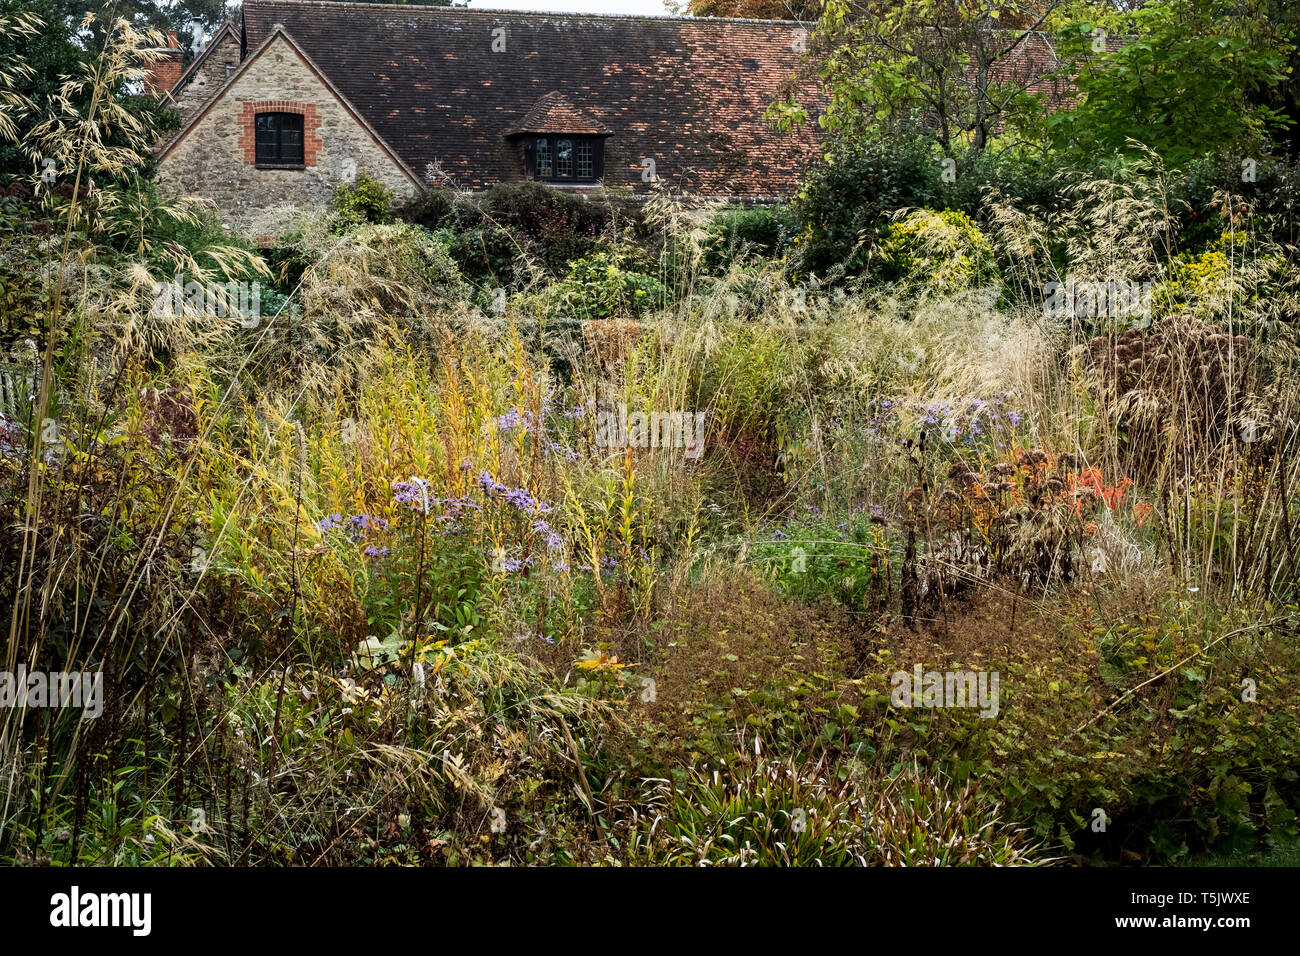 Einer wiese Bepflanzung im Garten eines Hotels, lange Gräser und Herbst Laub im Garten. Stockfoto